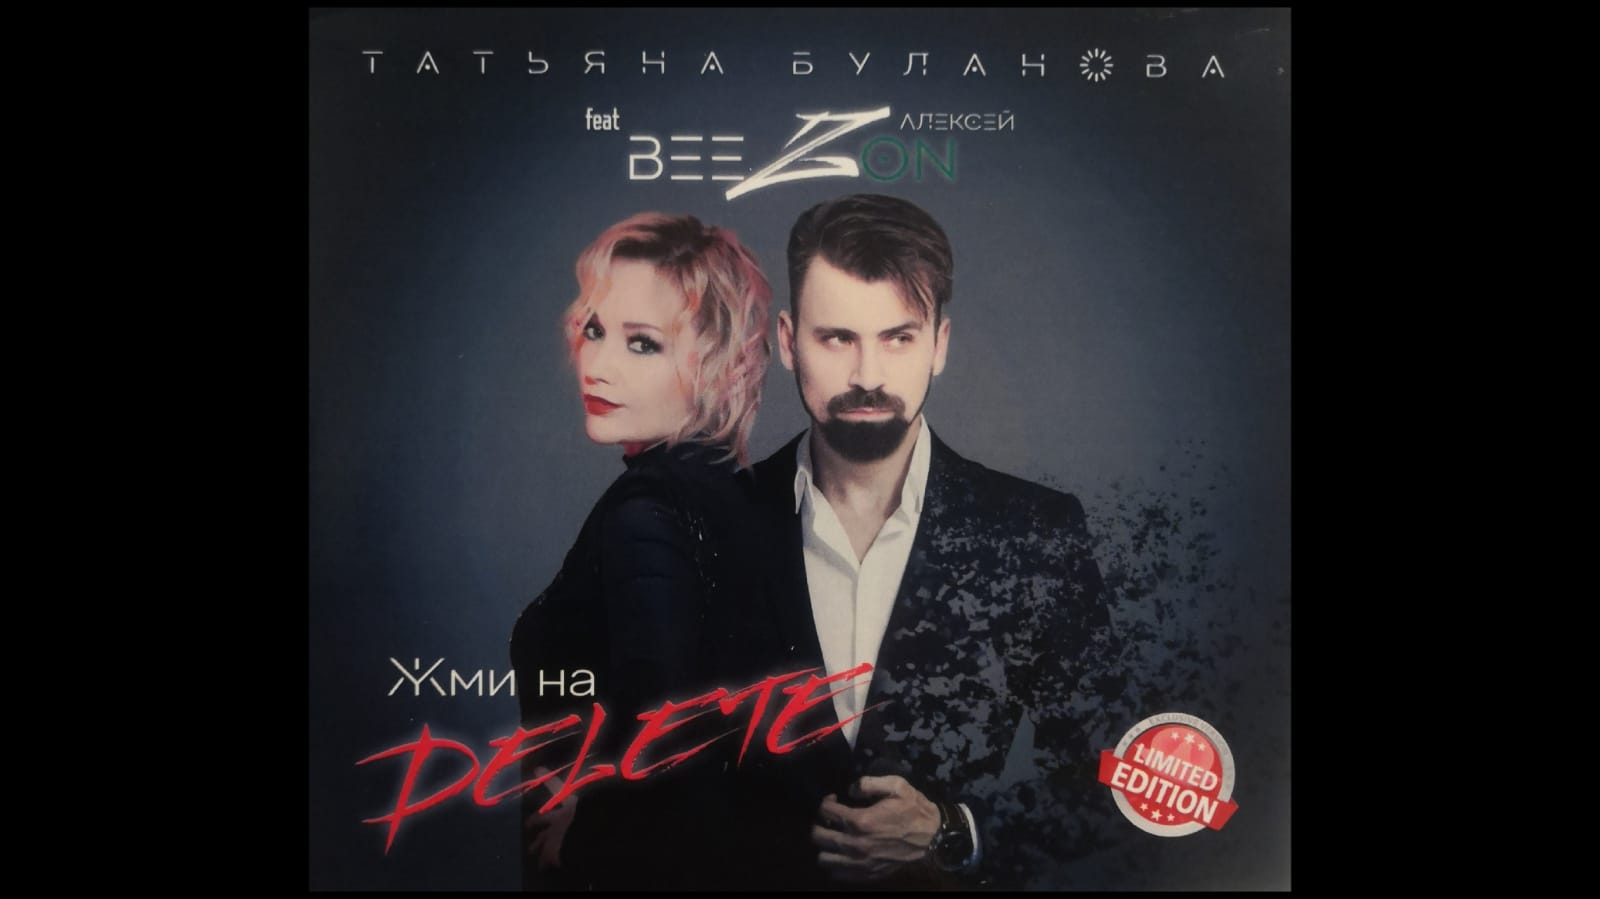 Татьяна Буланова & Алексей Beezon – Жми на DELETE (single audio)